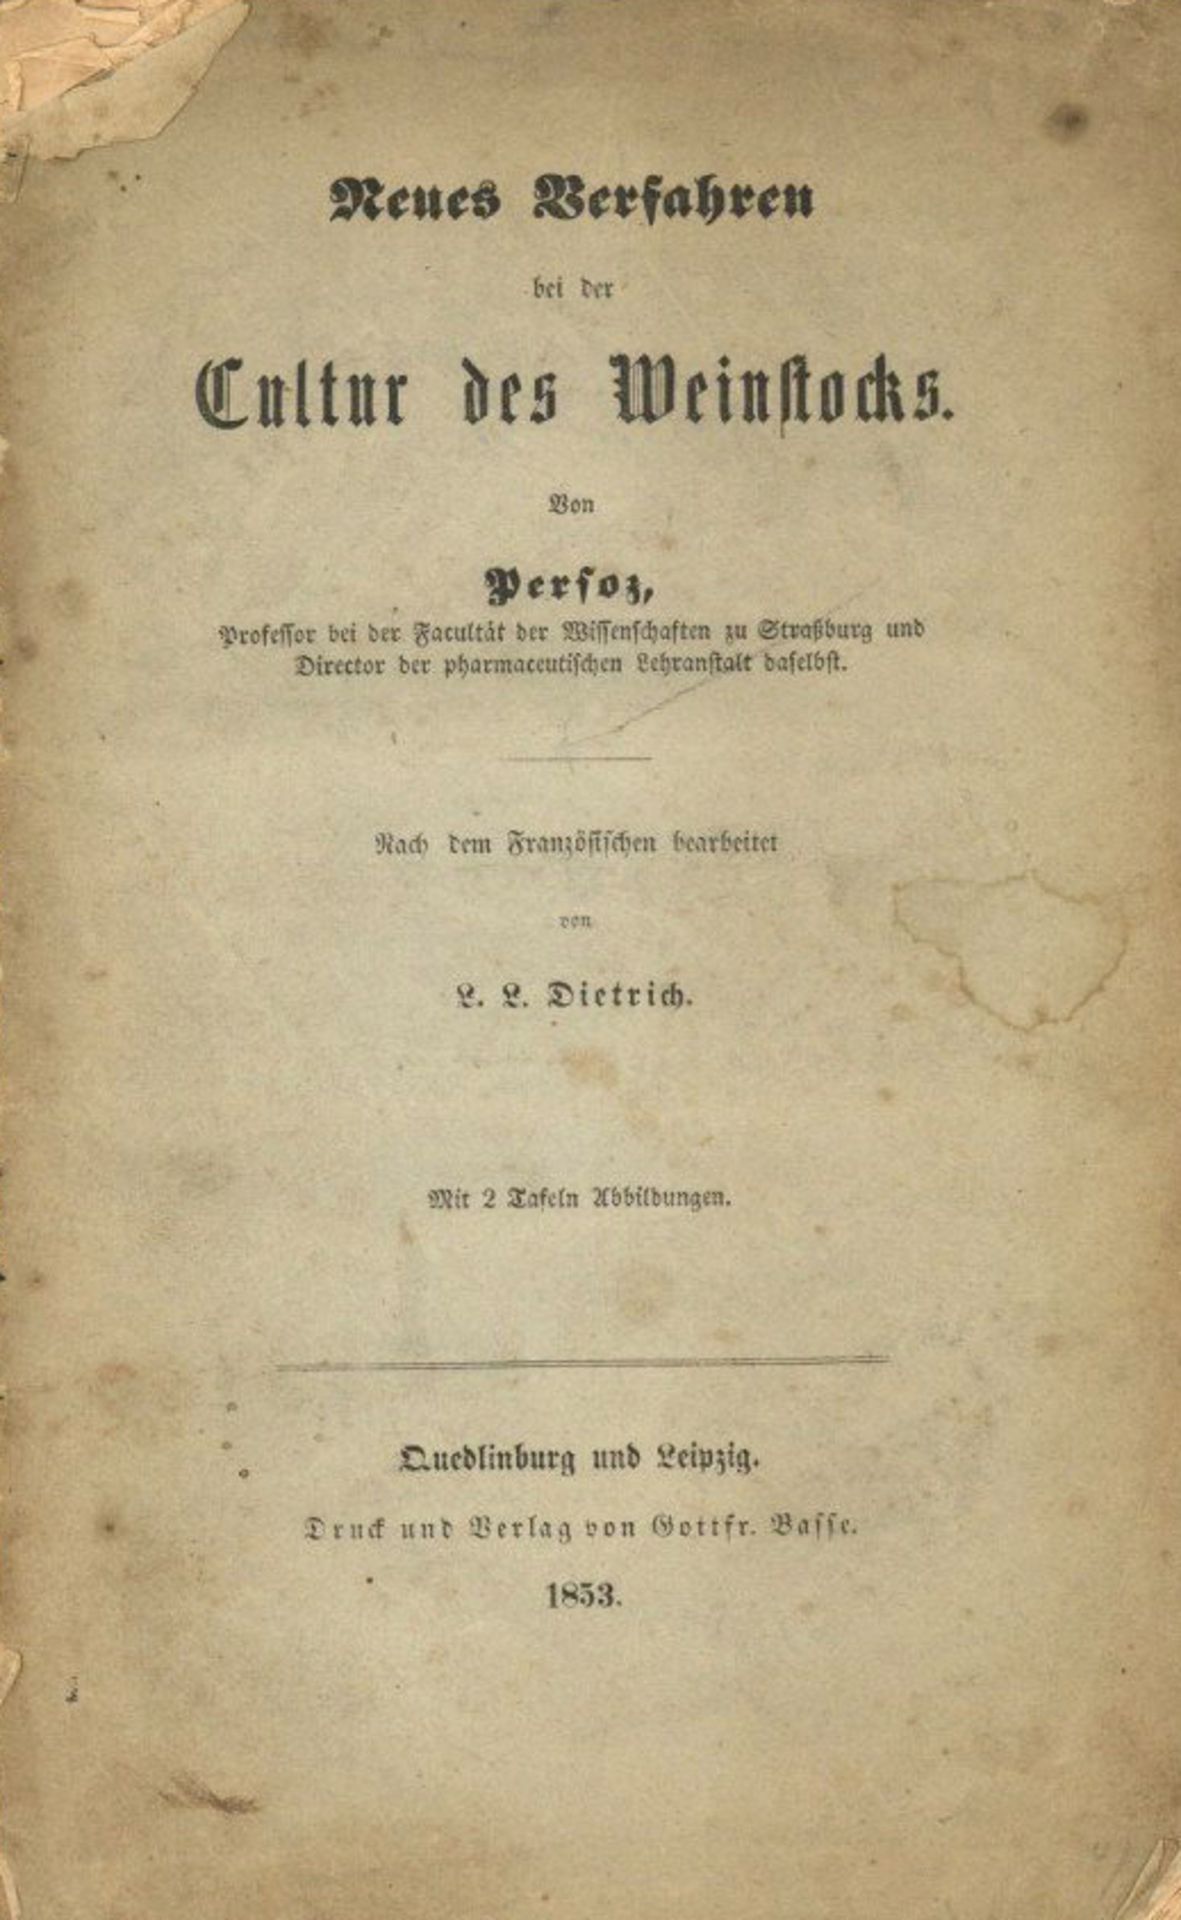 Wein Broschüre Neues Verfahren bei der Cultur des Weinstocks von Prof. Persoz, J. 1853, Verlag Basse